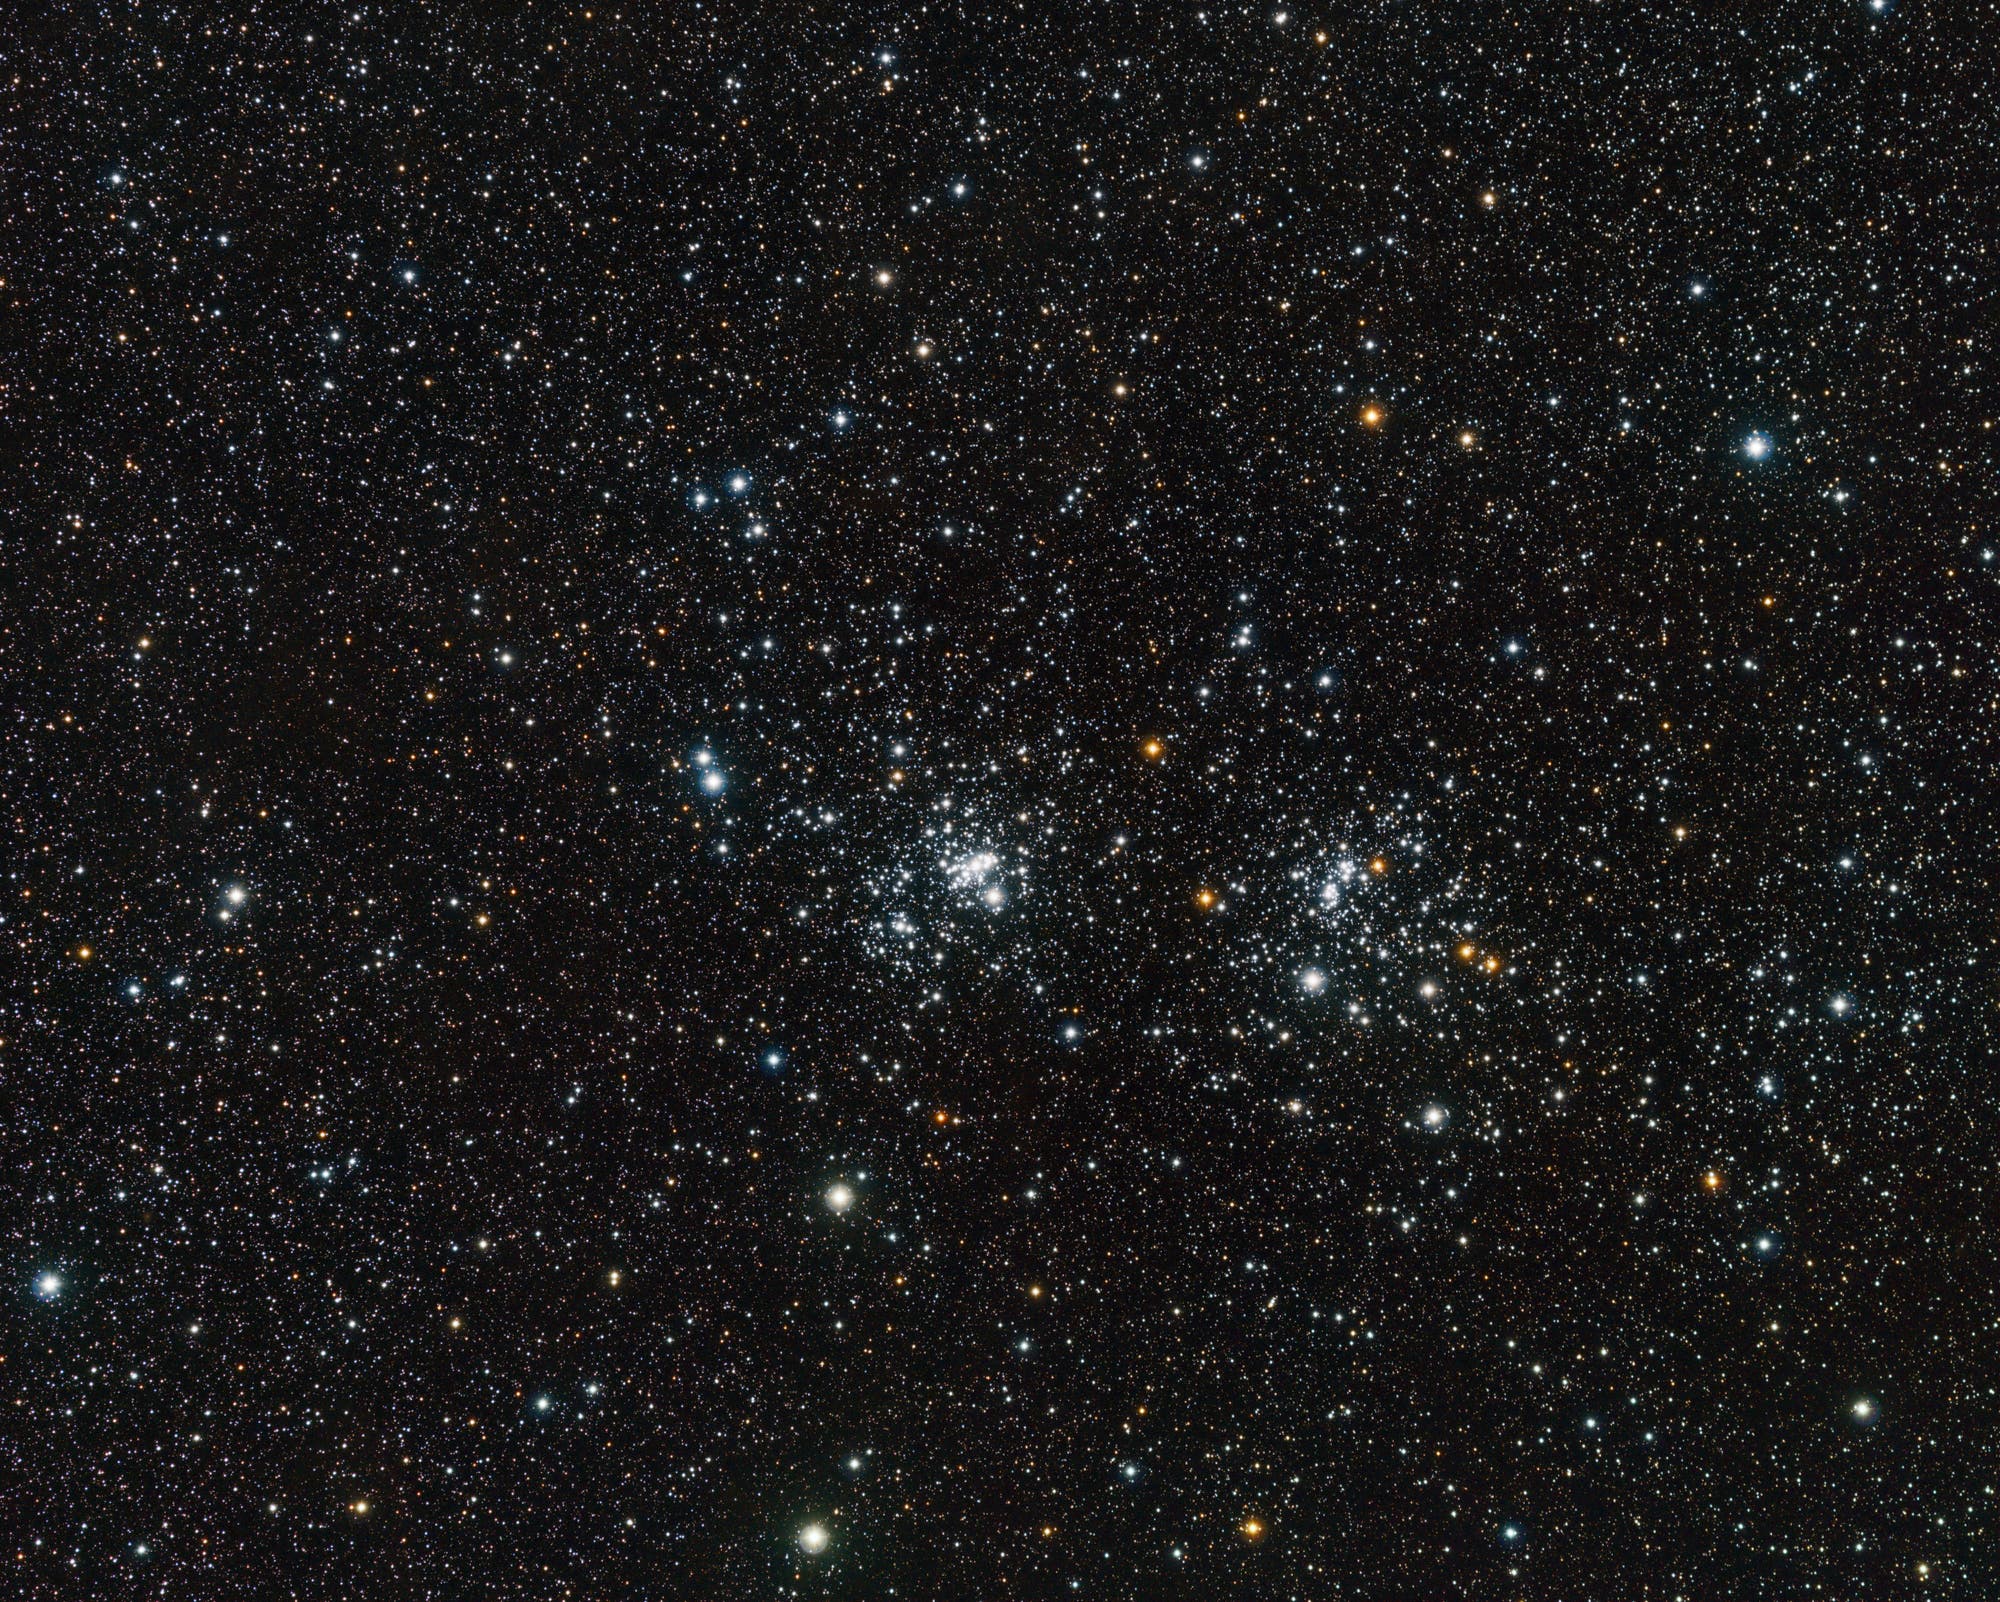 NGC 869 / 884